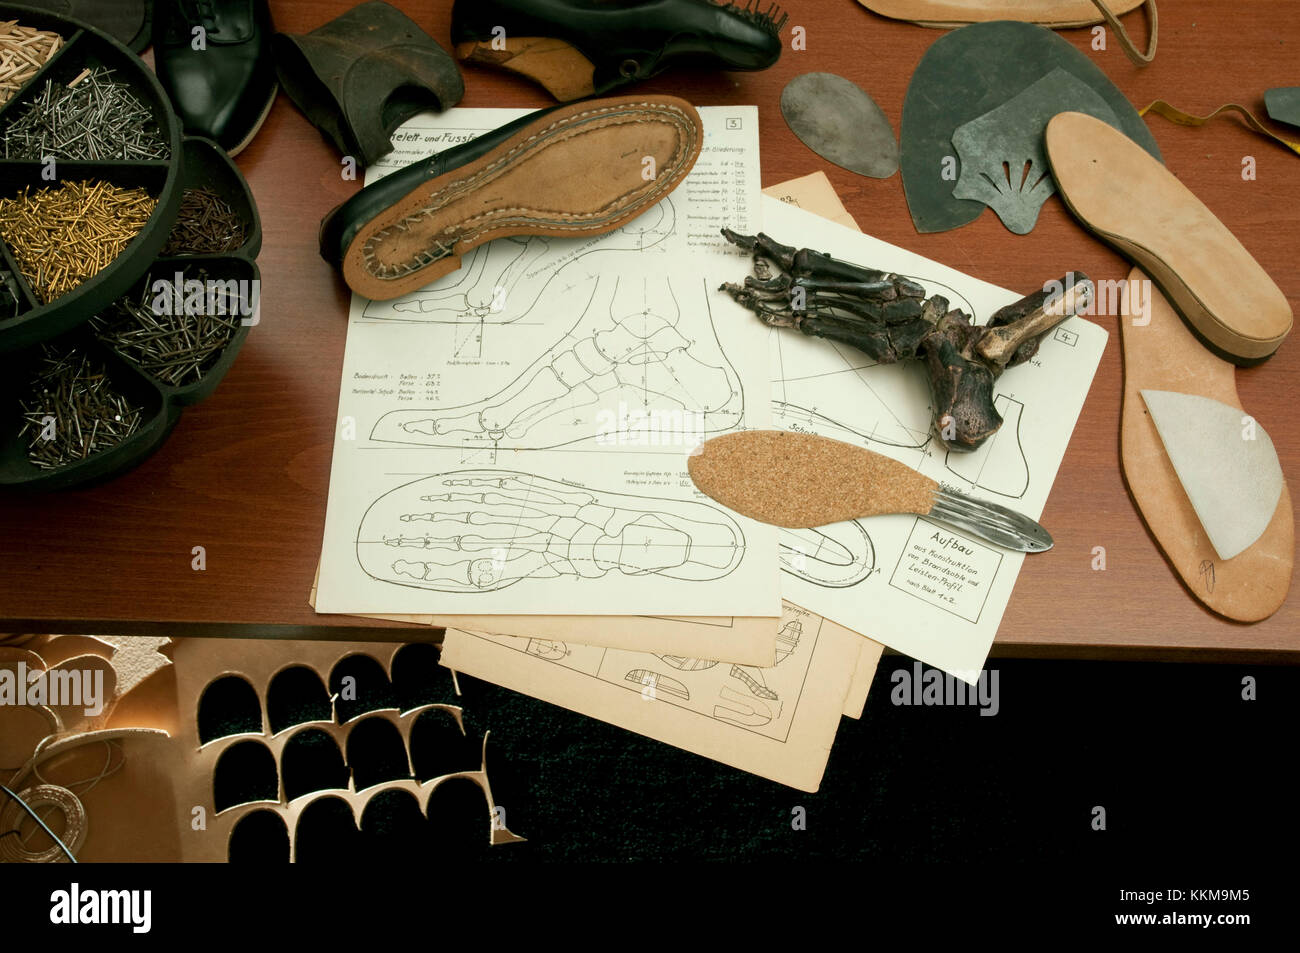 Die schuhmacherwerkstatt, Zeichnung für maßgeschneiderte Schuhe, unfertigen handgefertigte Schuhe und Sohlen Stockfoto